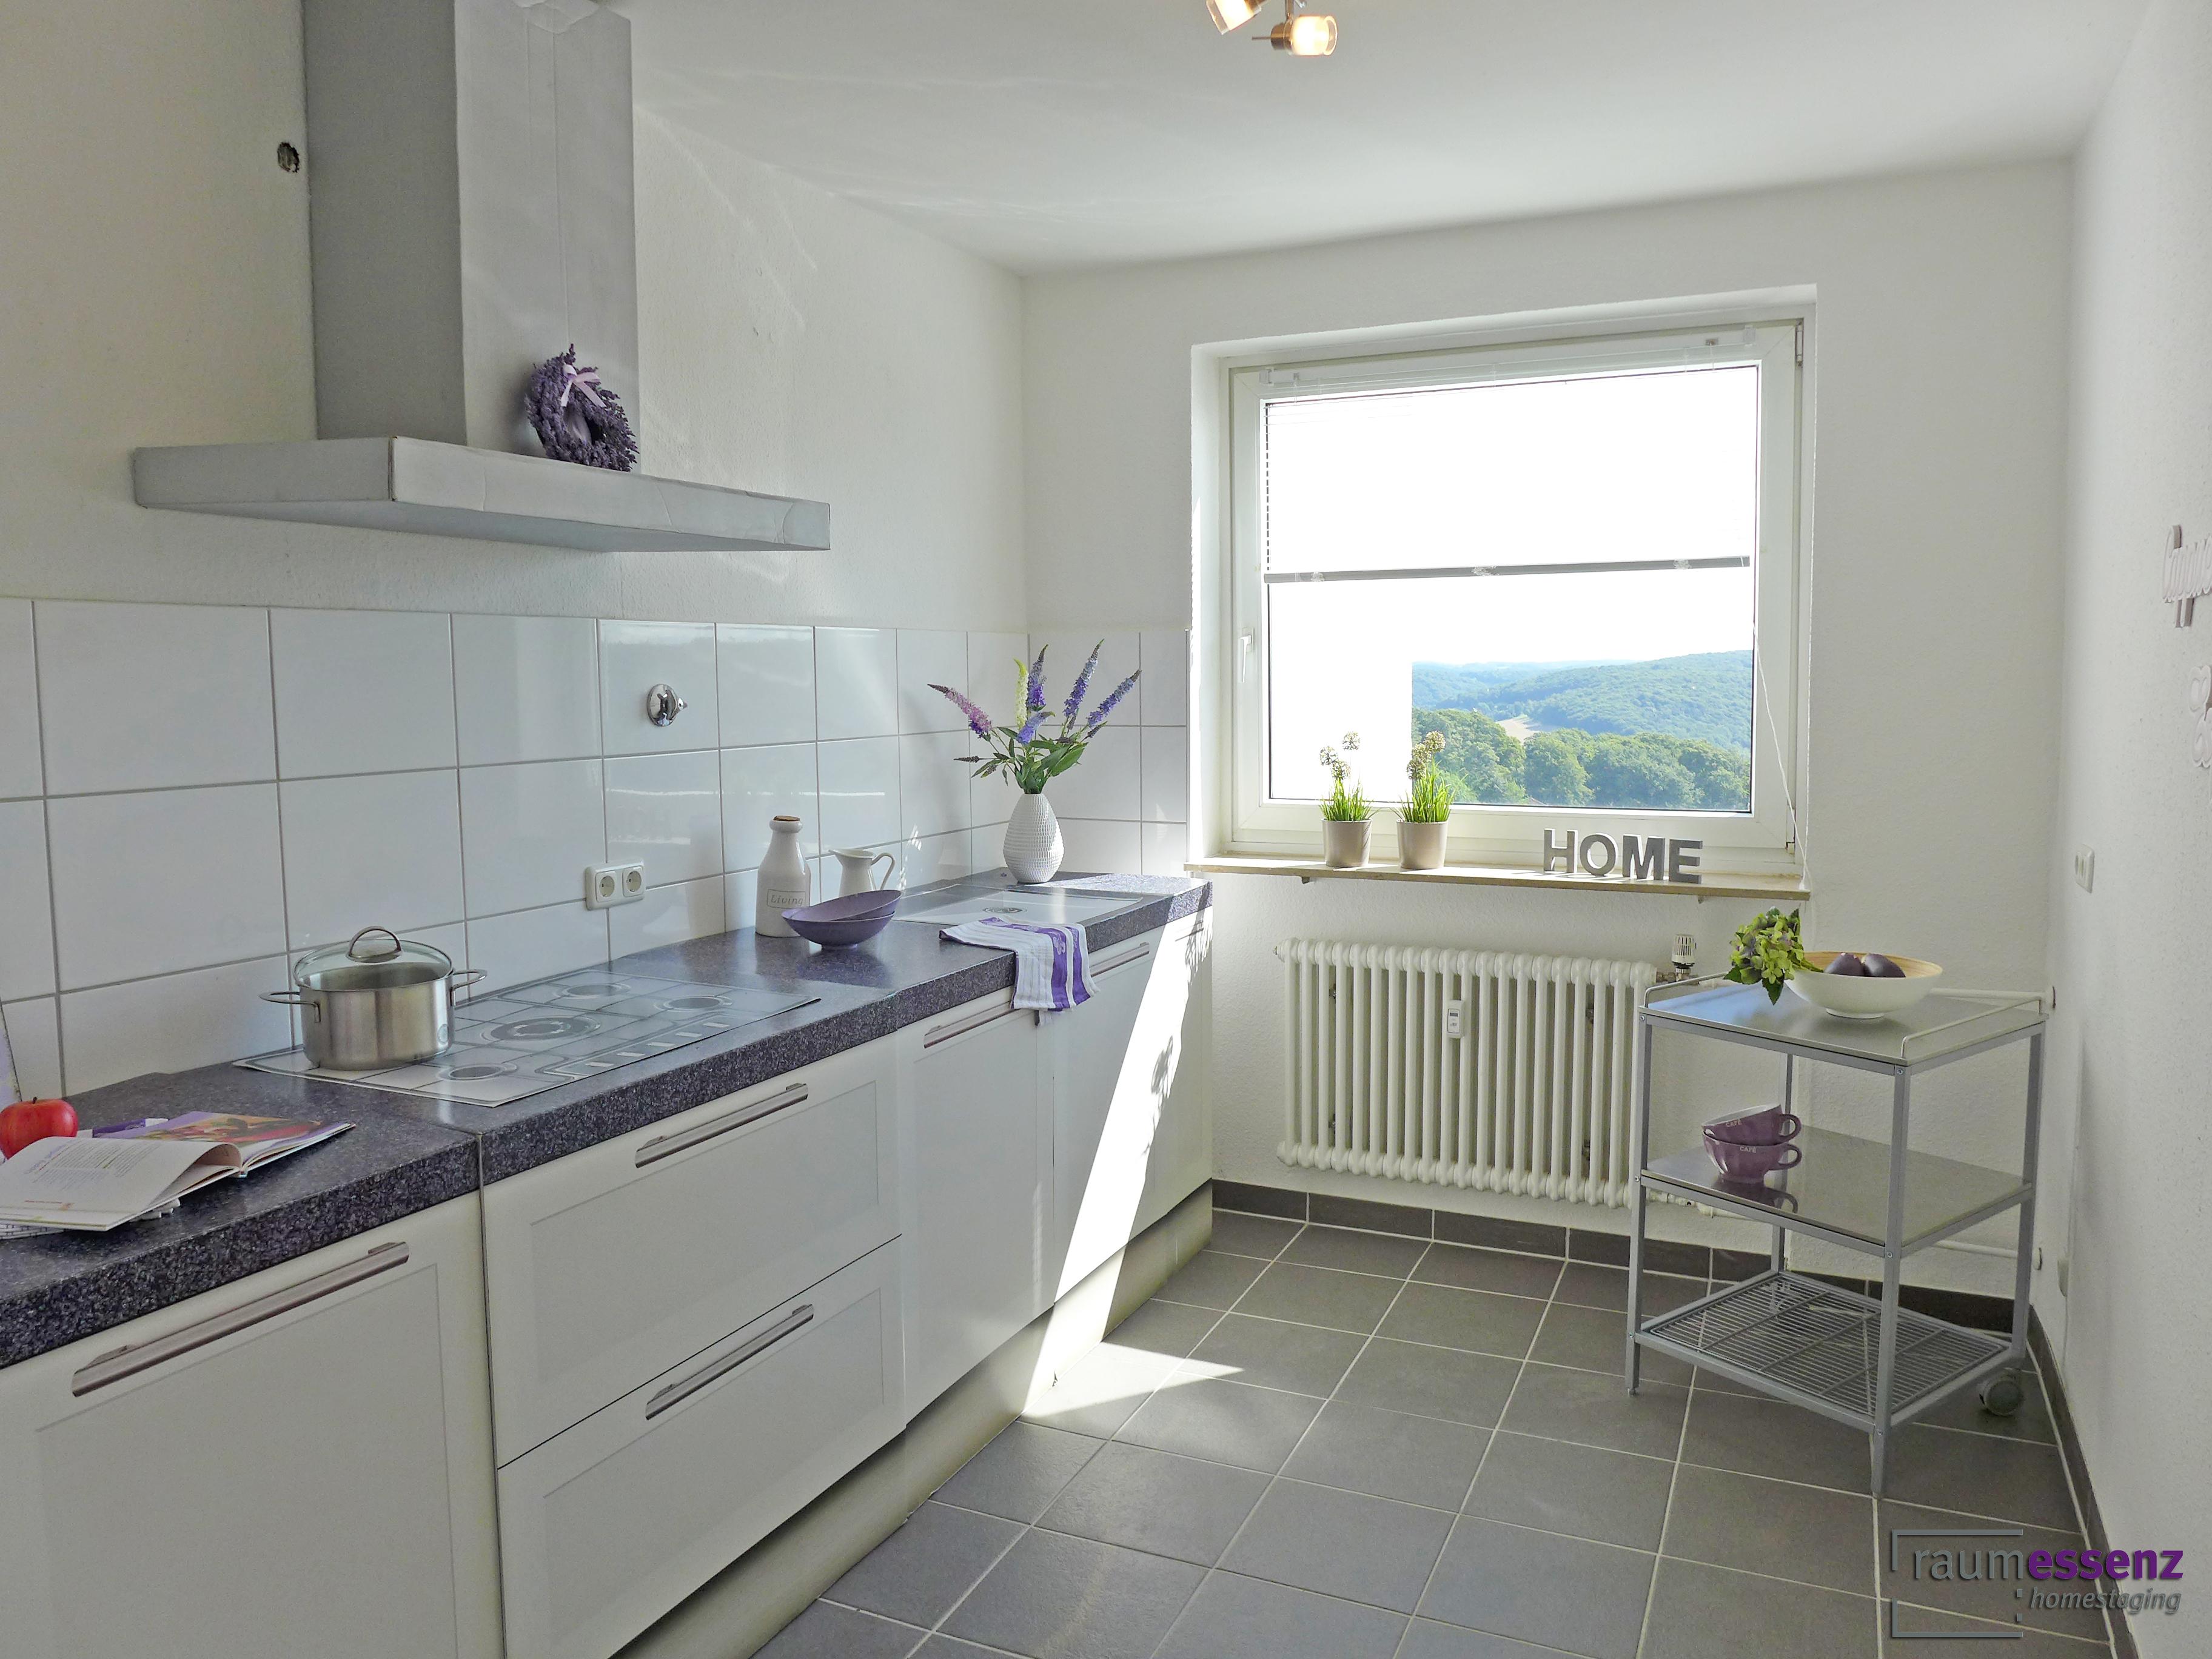 Home Staging - Küche #küche ©raumessenz homestaging